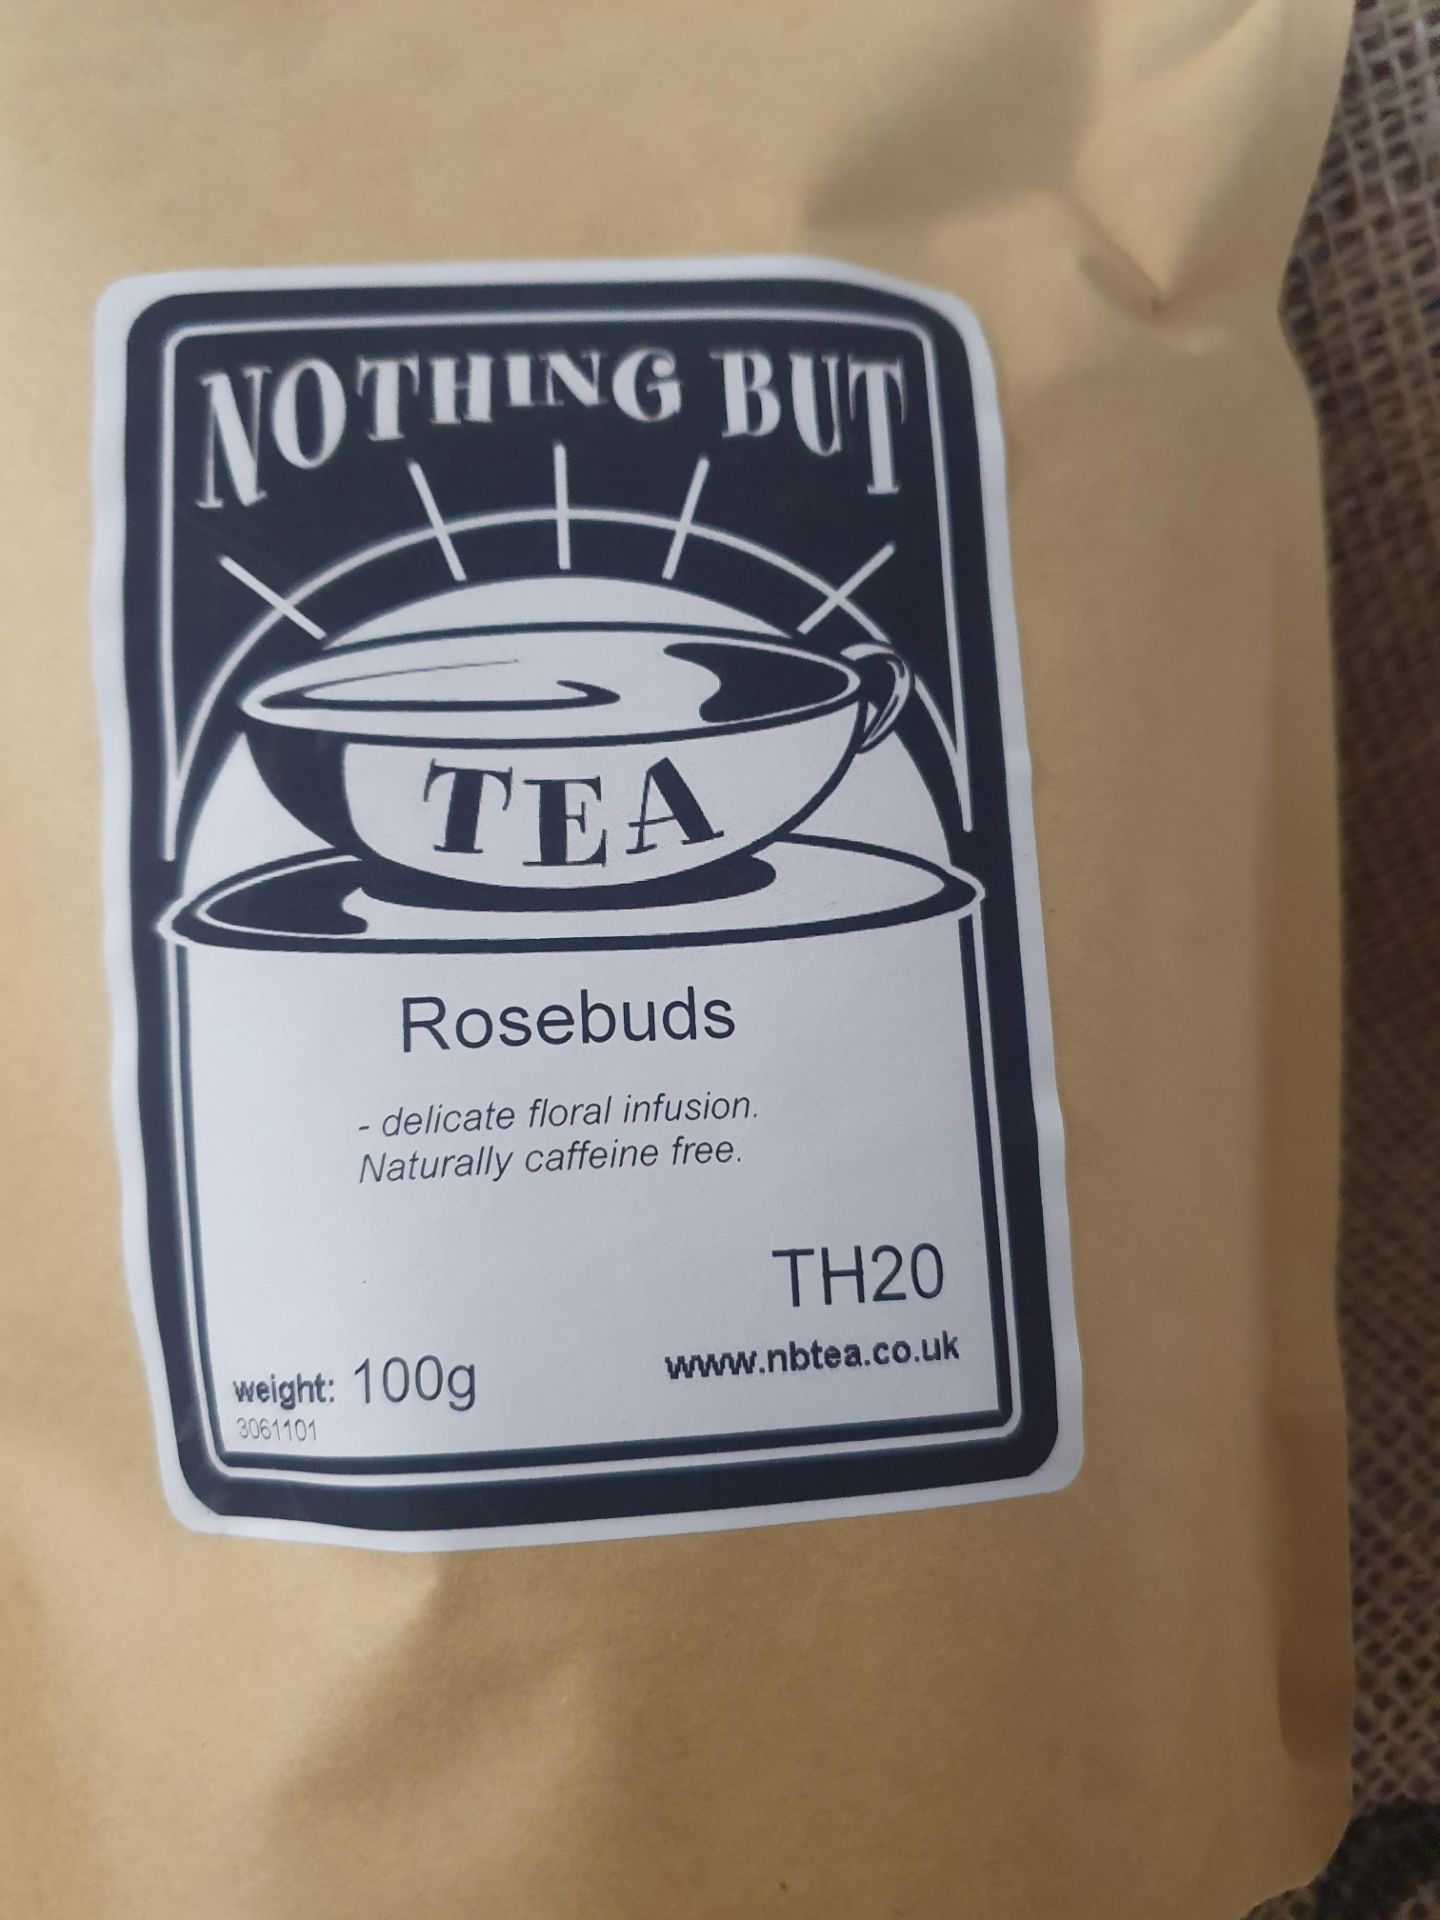 * 4 x 100g Rosebuds loose leaf tea - Nothing But Tea - Image 2 of 2